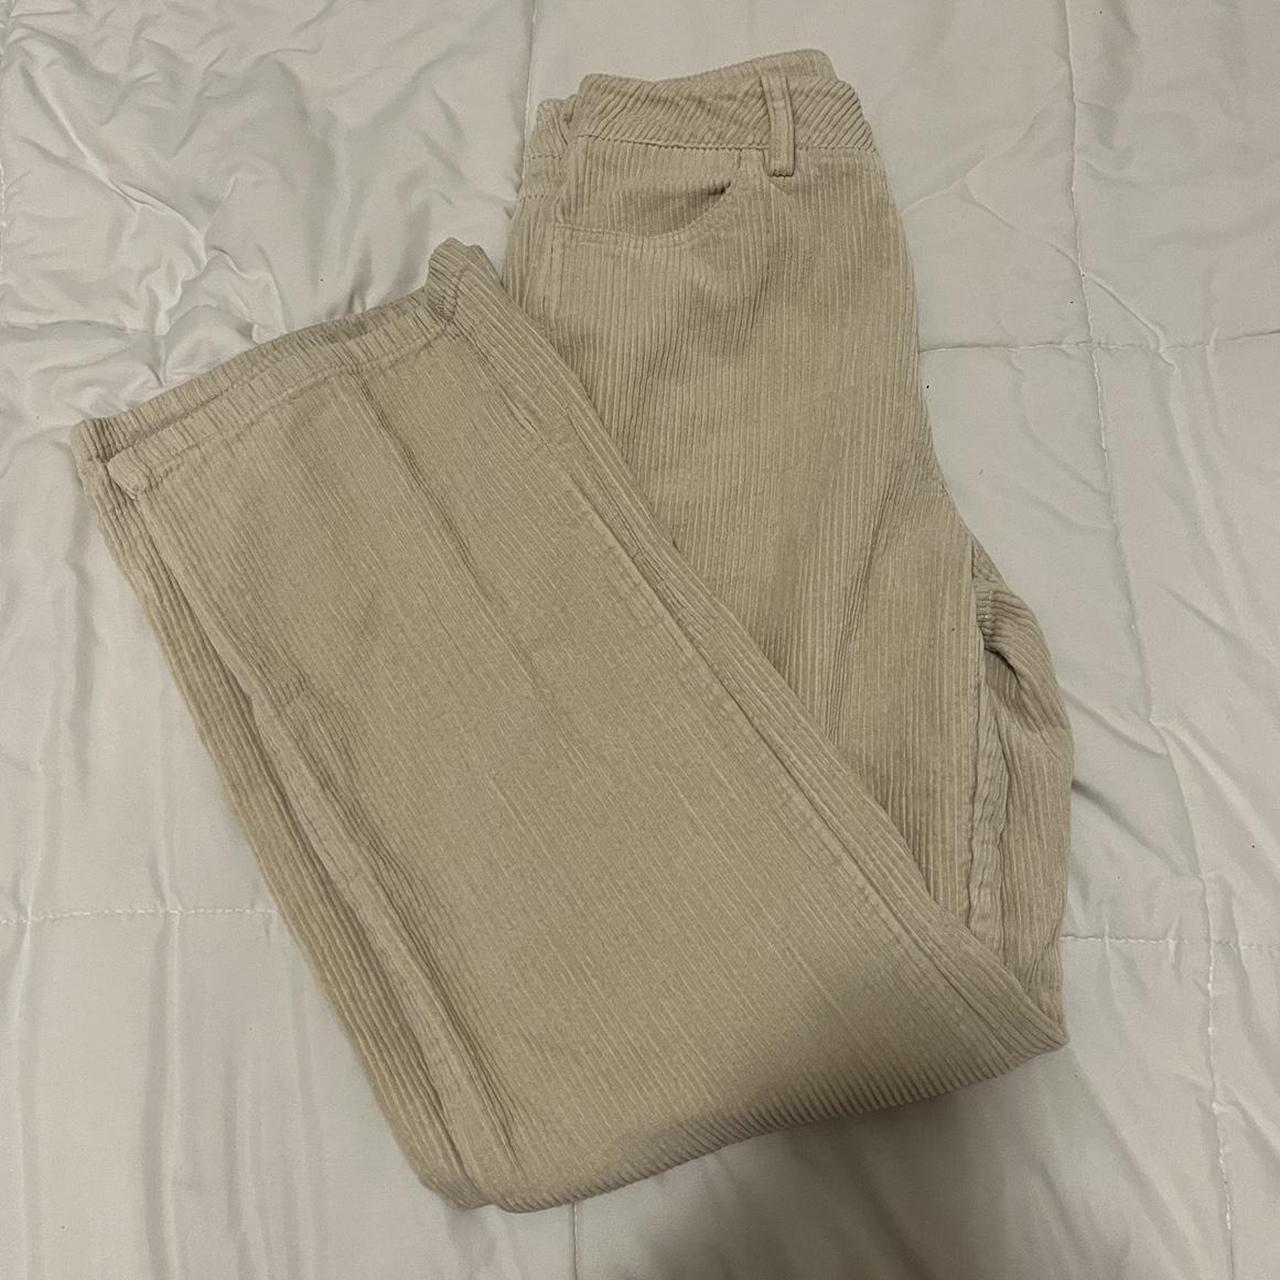 beige corduroy pants - worn twice - size 27 - from... - Depop